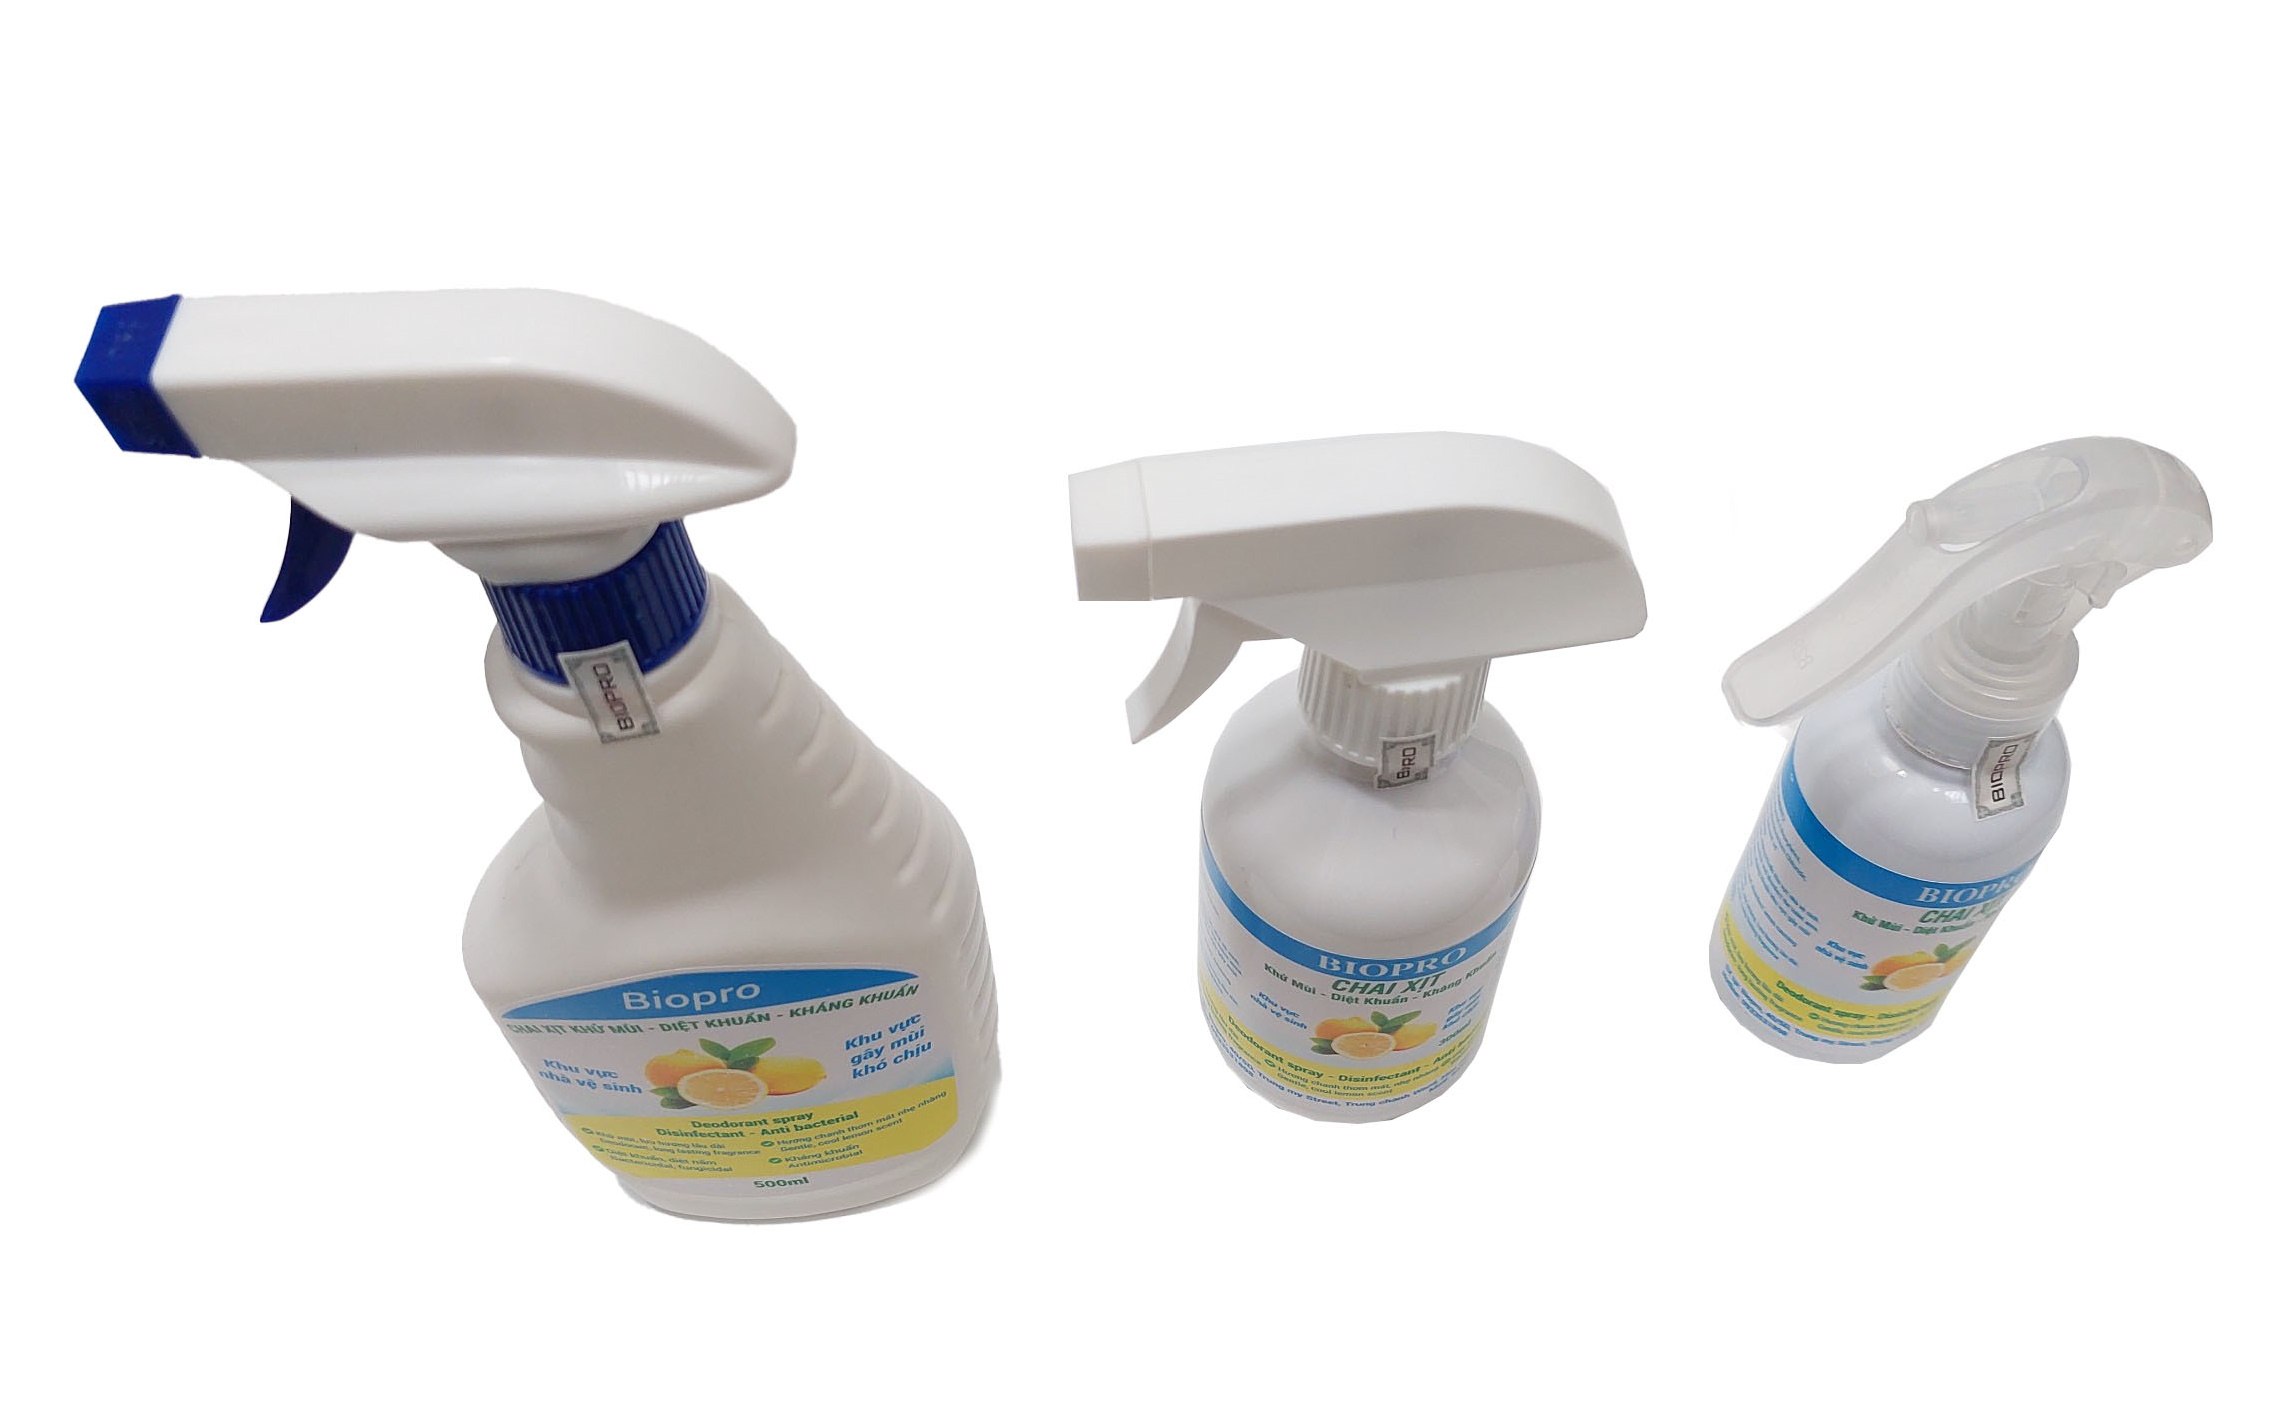 Chai xịt Biopro khử mùi diệt khuẩn kháng khuẩn Khu vực gây mùi khó chịu Khu vực nhà vệ sinh Hương chanh thơm mát dịu nhẹ